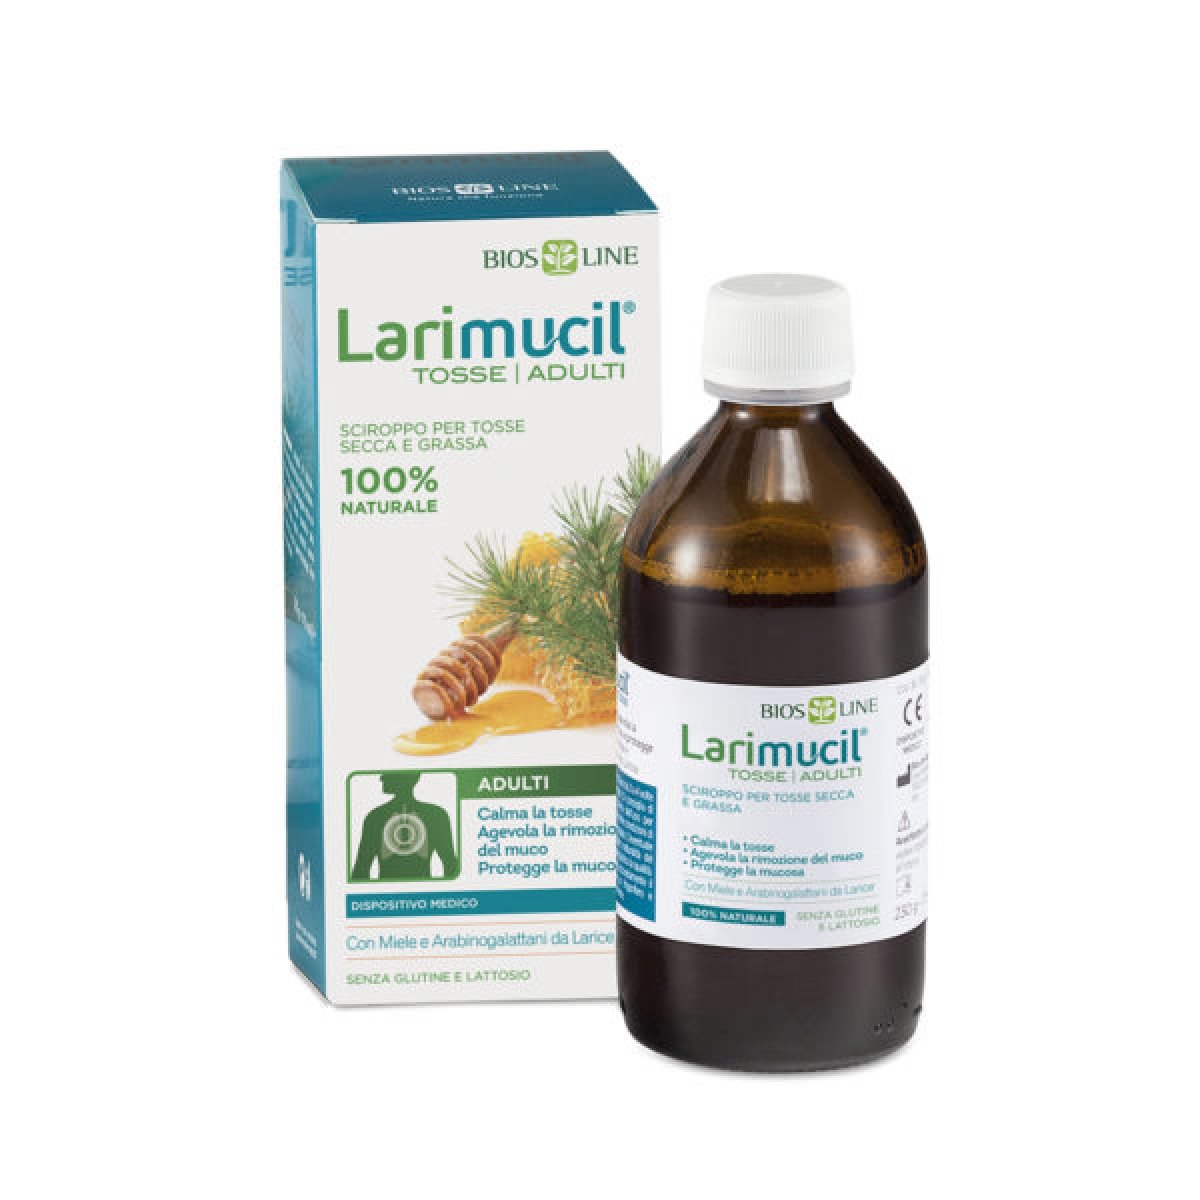 Larimucil® Tosse Adulti -  Bios Line Per calmare la tosse secca e grassa, proteggendo la mucosa, e agevolare la rimozione del muco. Flacone da 175 ml.